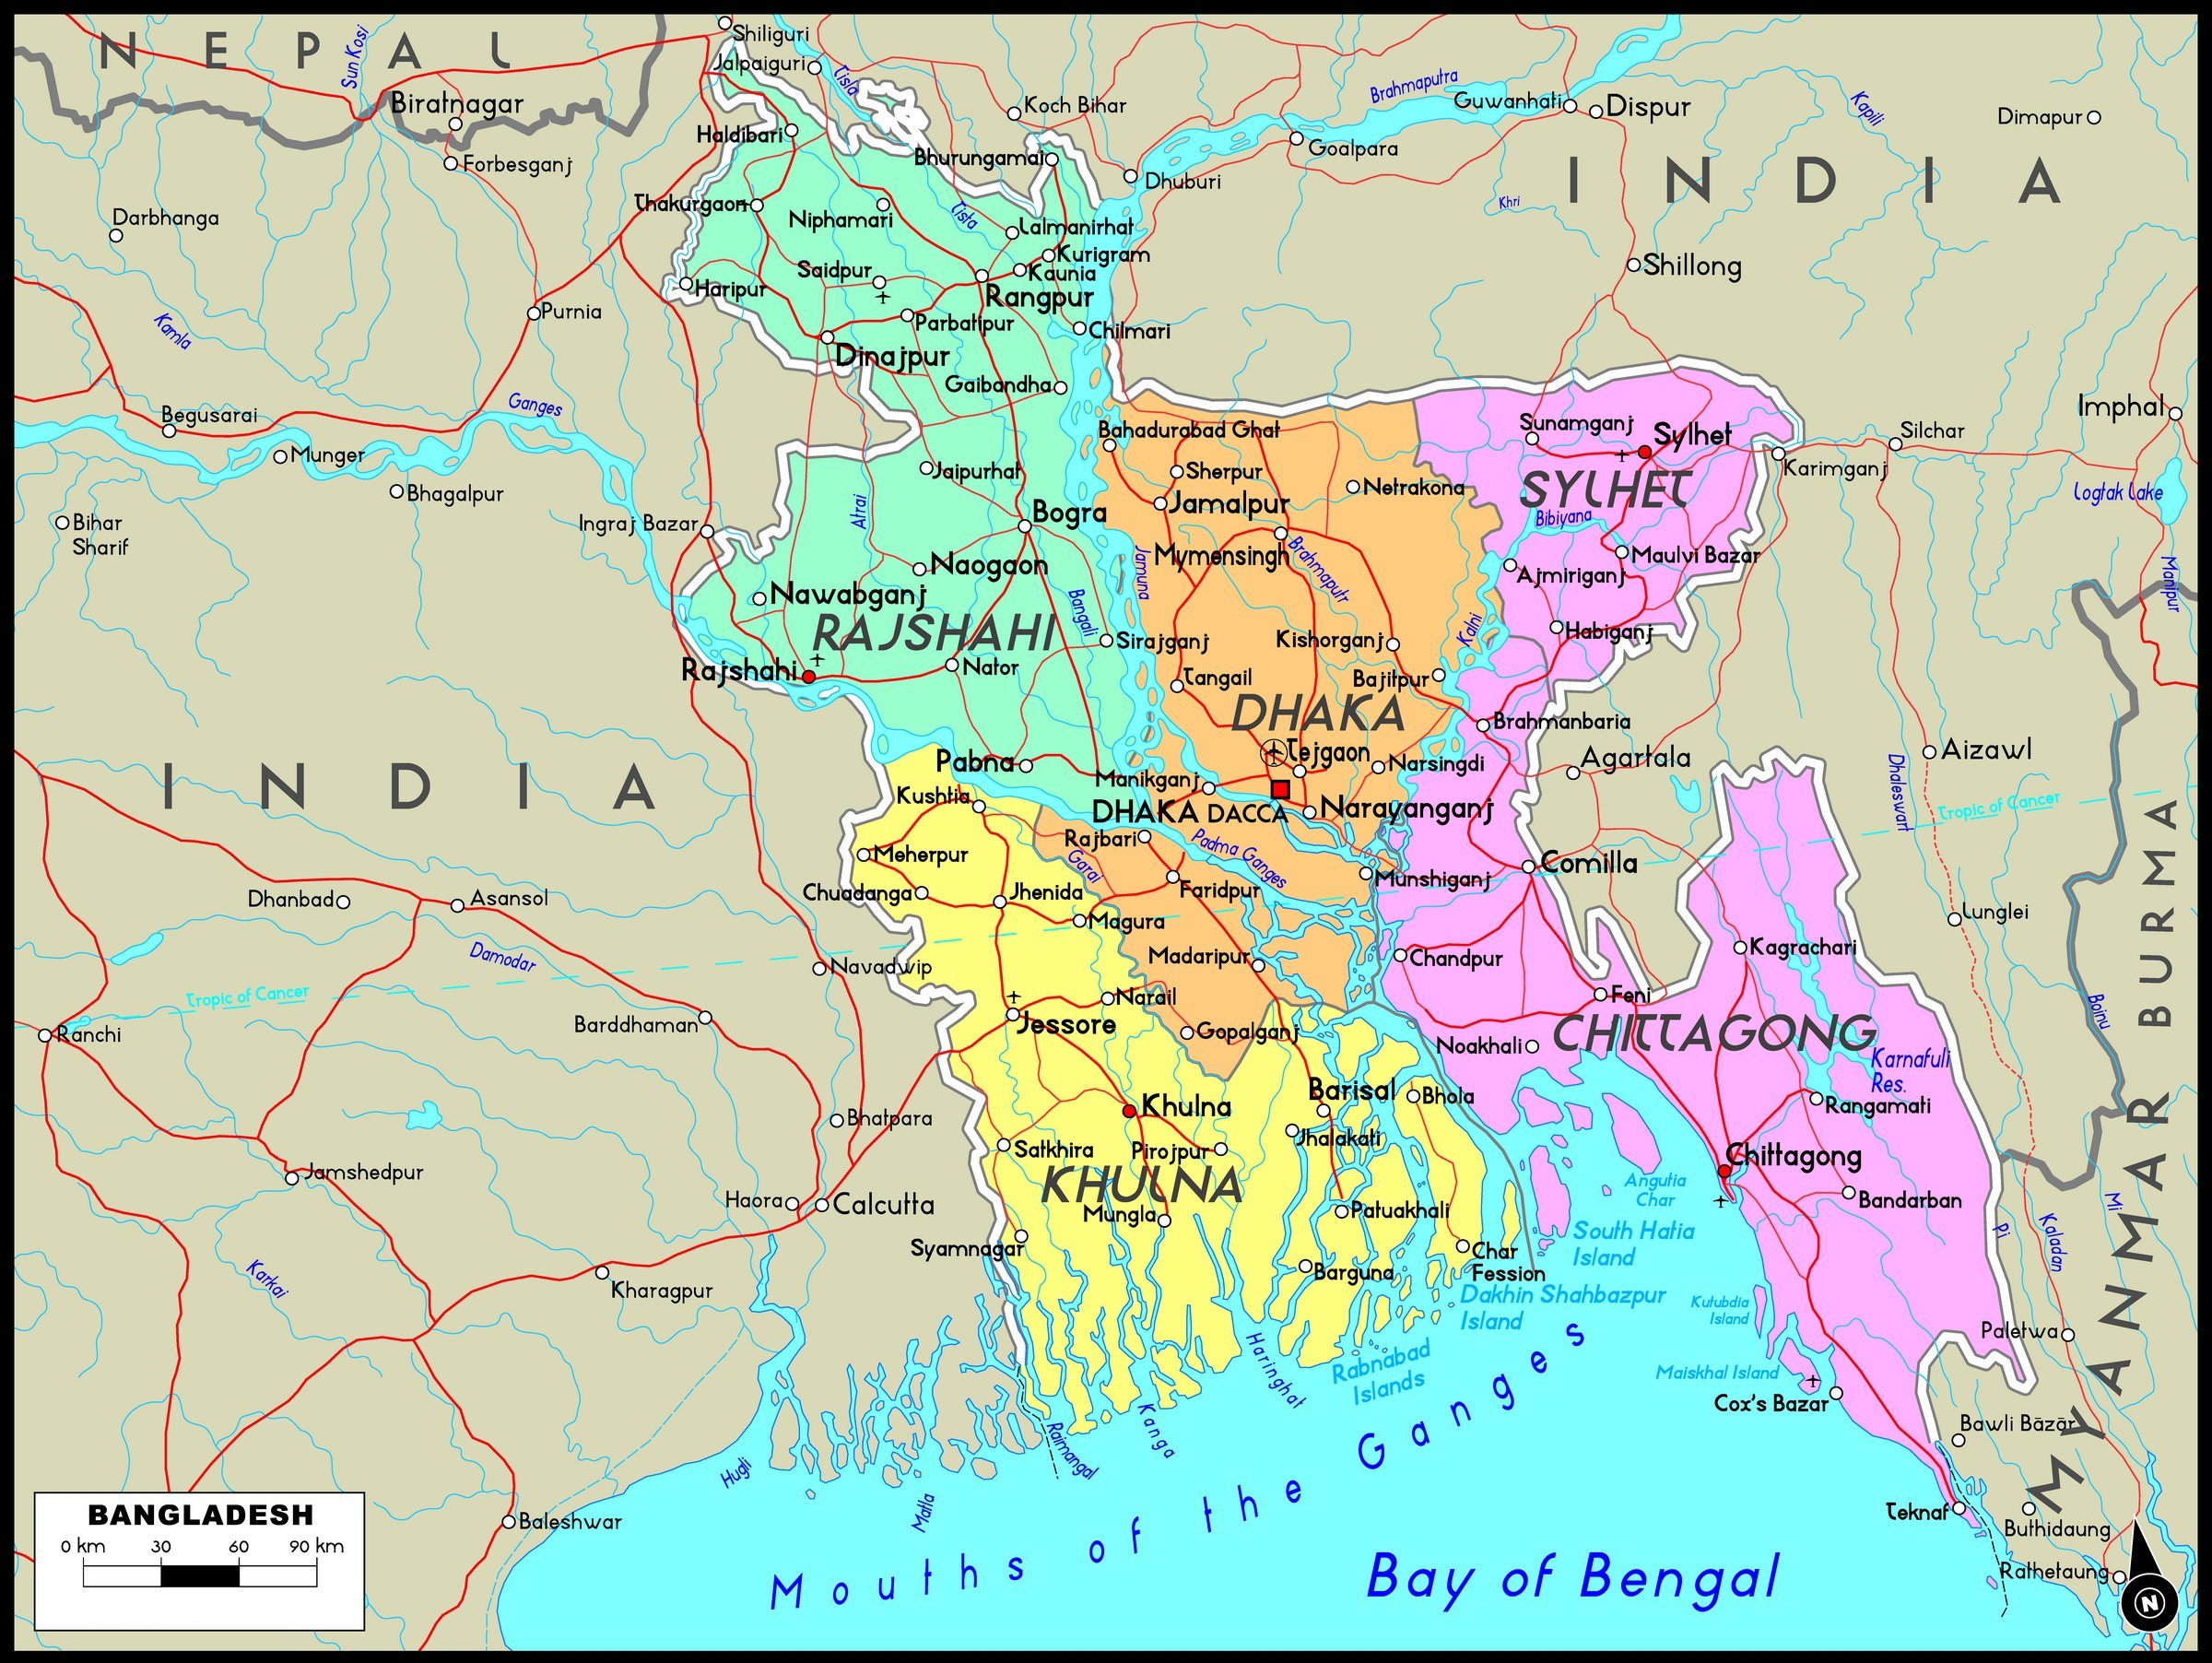 Bangladesh Maps | Printable Maps of Bangladesh for Download